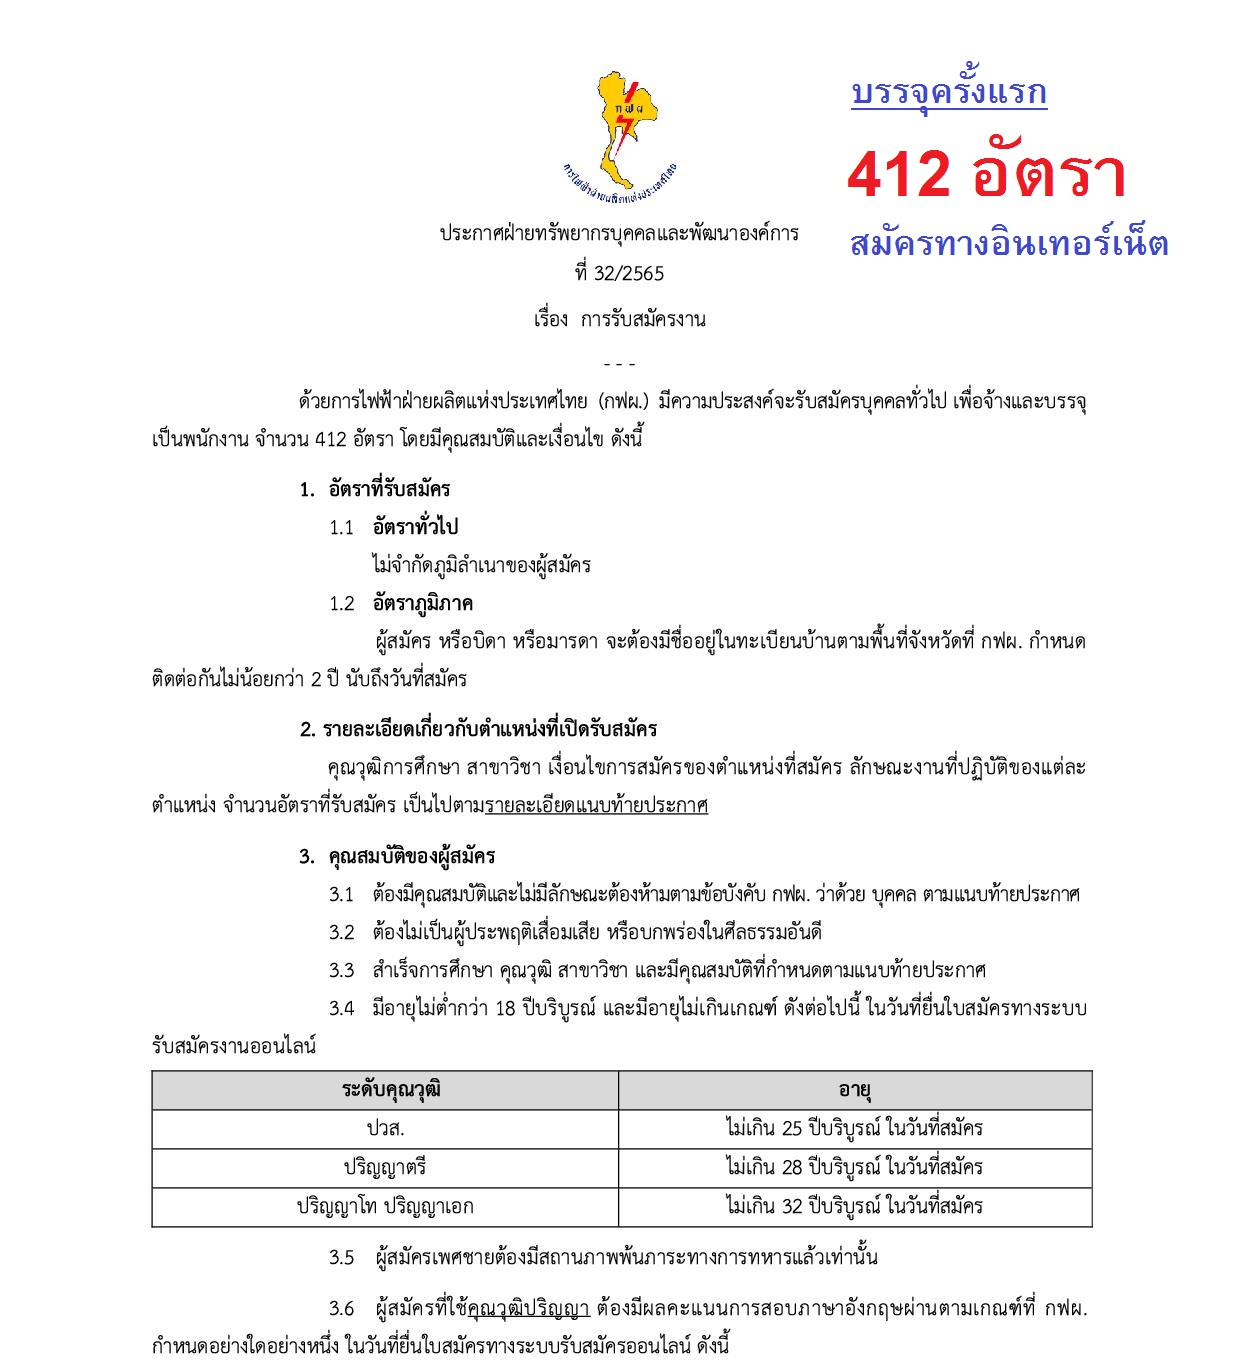 การไฟฟ้าฝ่ายผลิตแห่งประเทศไทย (กฟผ.) เปิดรับสมัครเพื่อบรรจุเป็นพนักงาน 412  อัตรา ประจําปี 2565